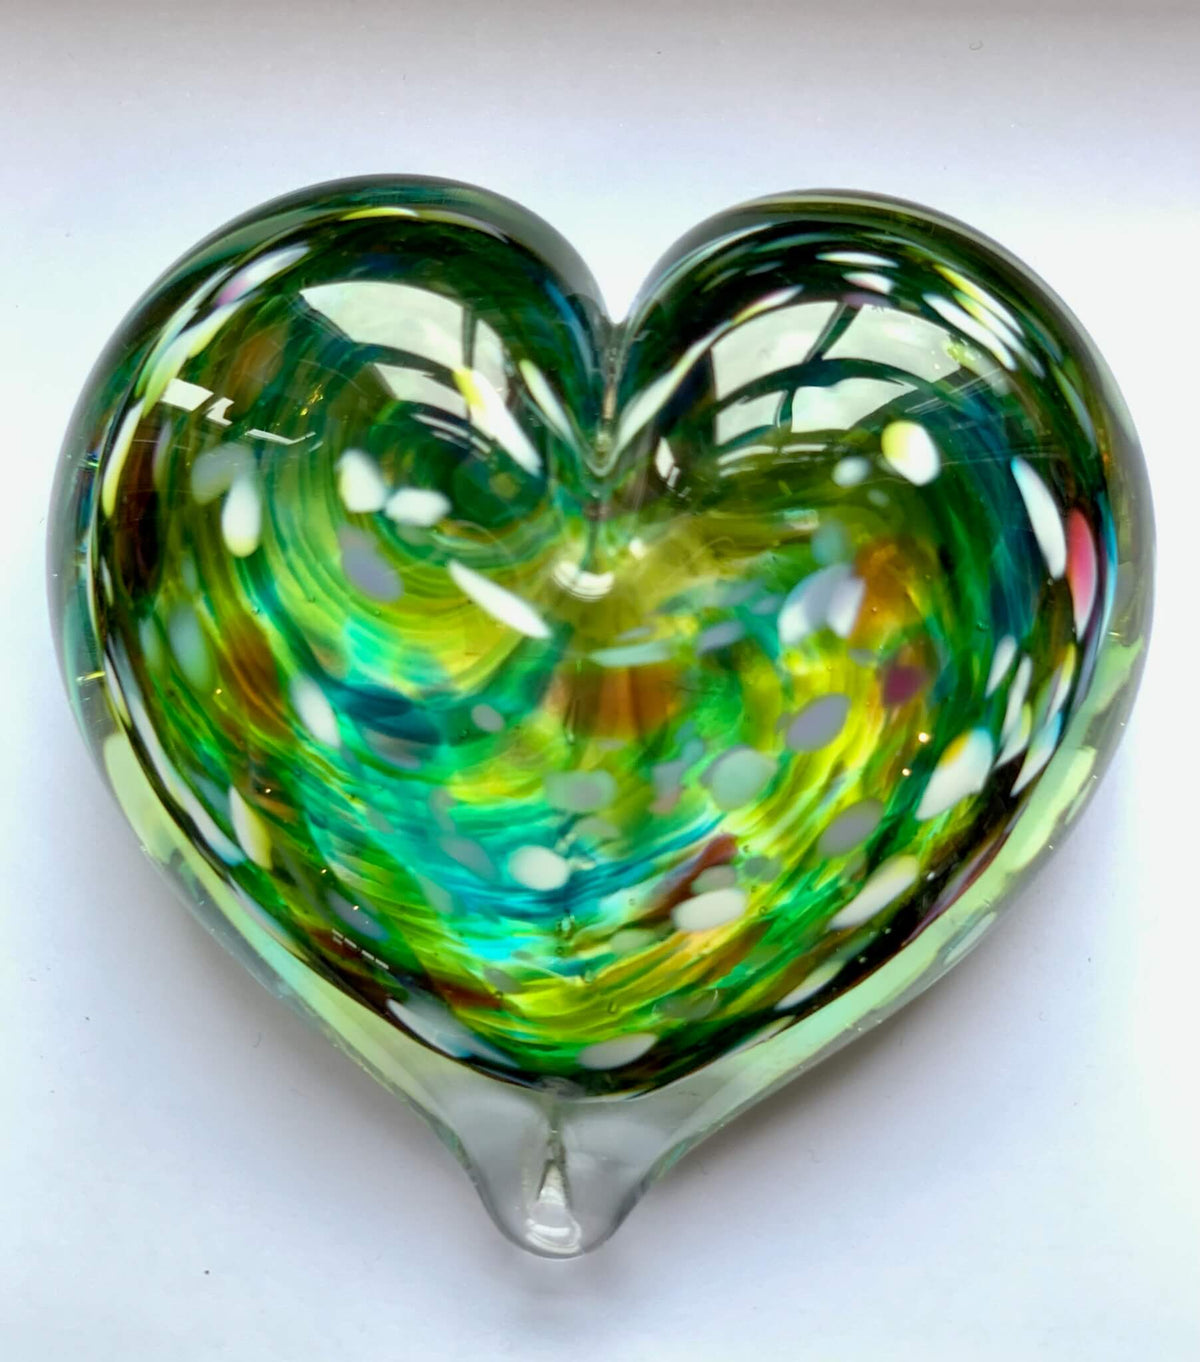 Glass blown heart - Green swirl design